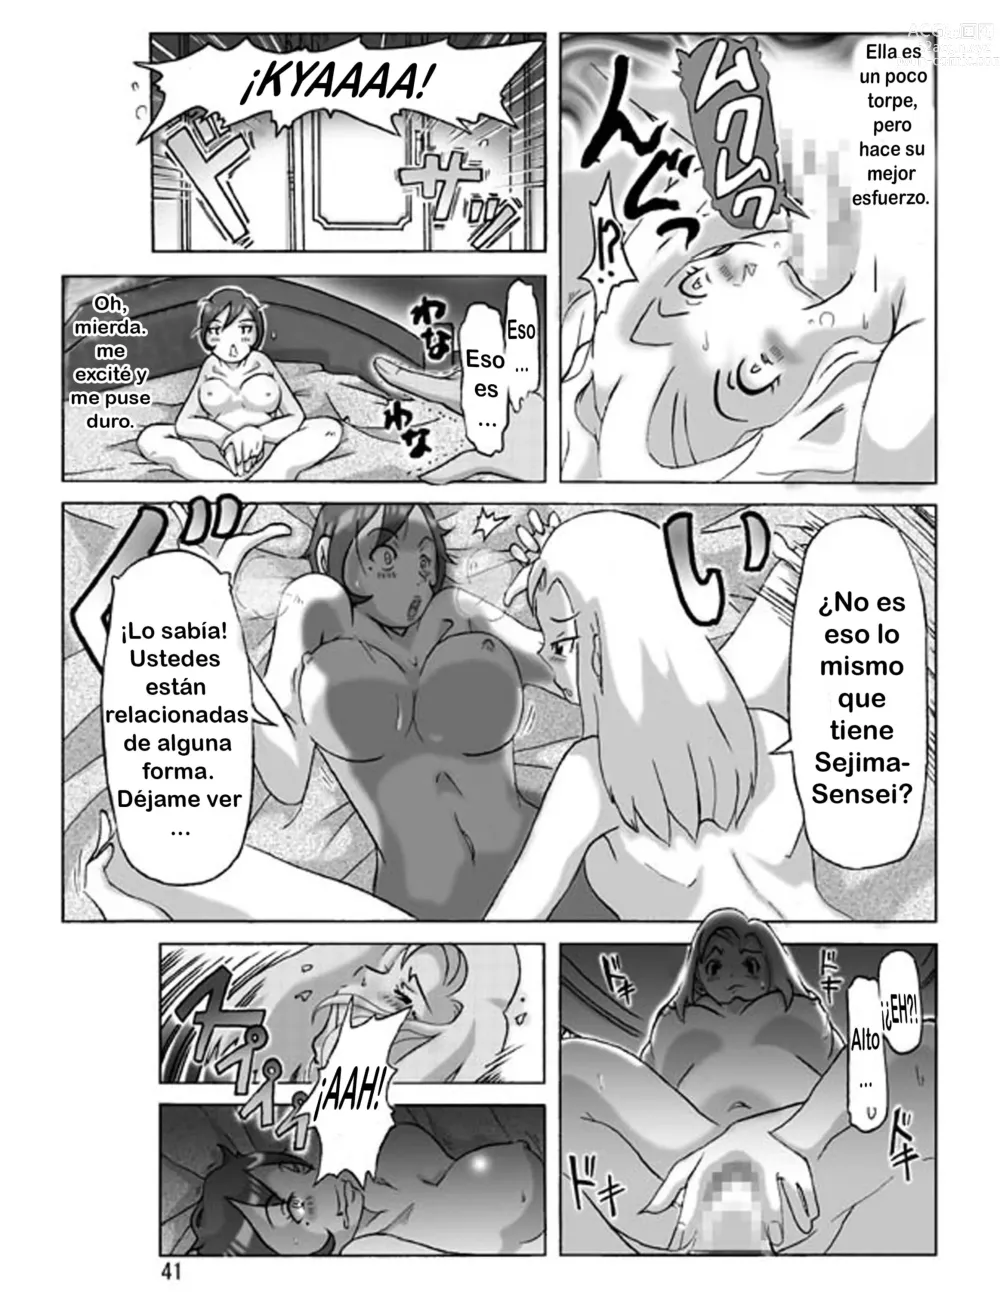 Page 41 of doujinshi Katta Kigurumi Sono Yon